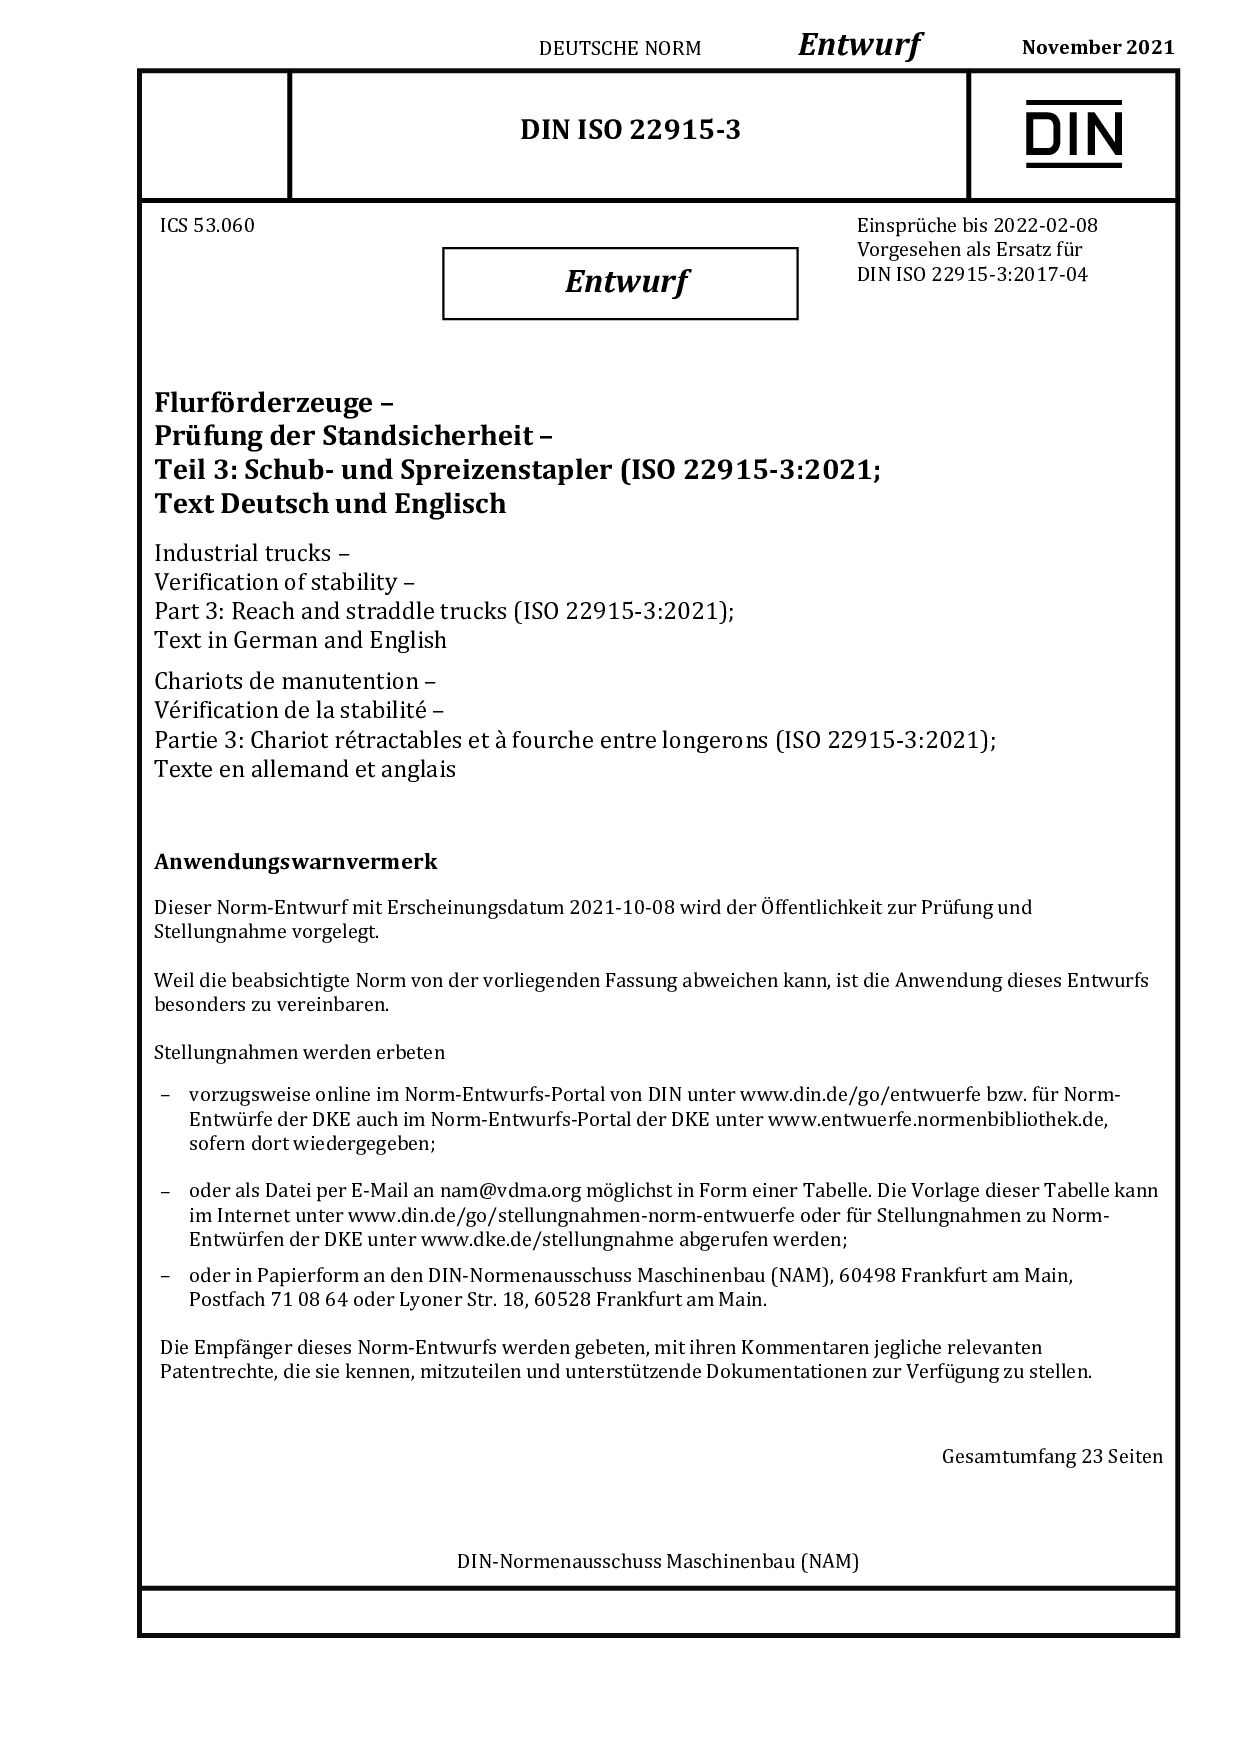 DIN ISO 22915-3 E:2021-11